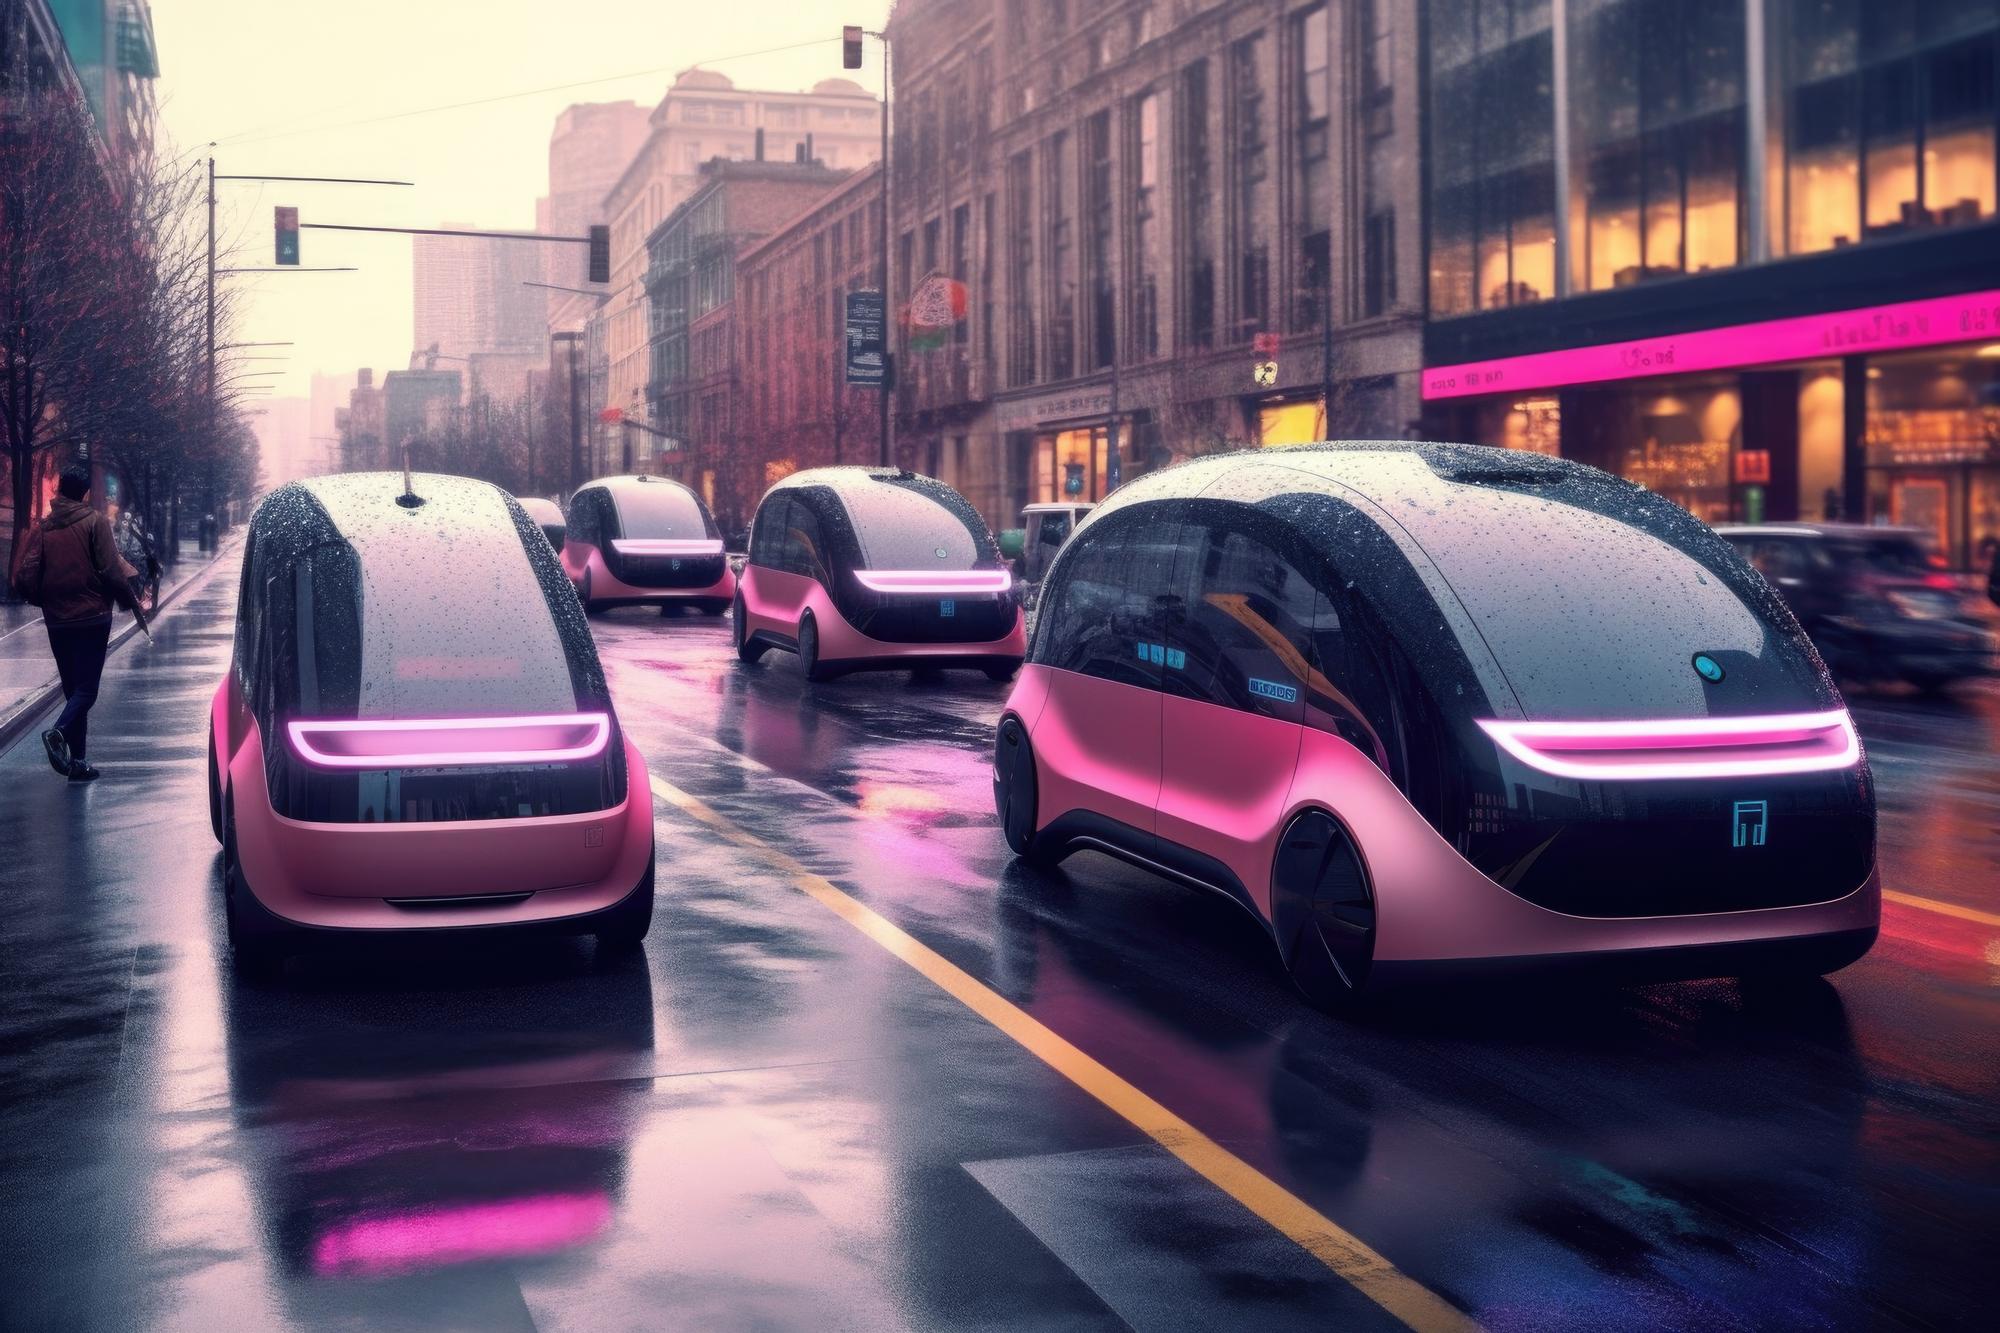 Vehículos eléctricos autónomos en calles limpias creados con IA generativa